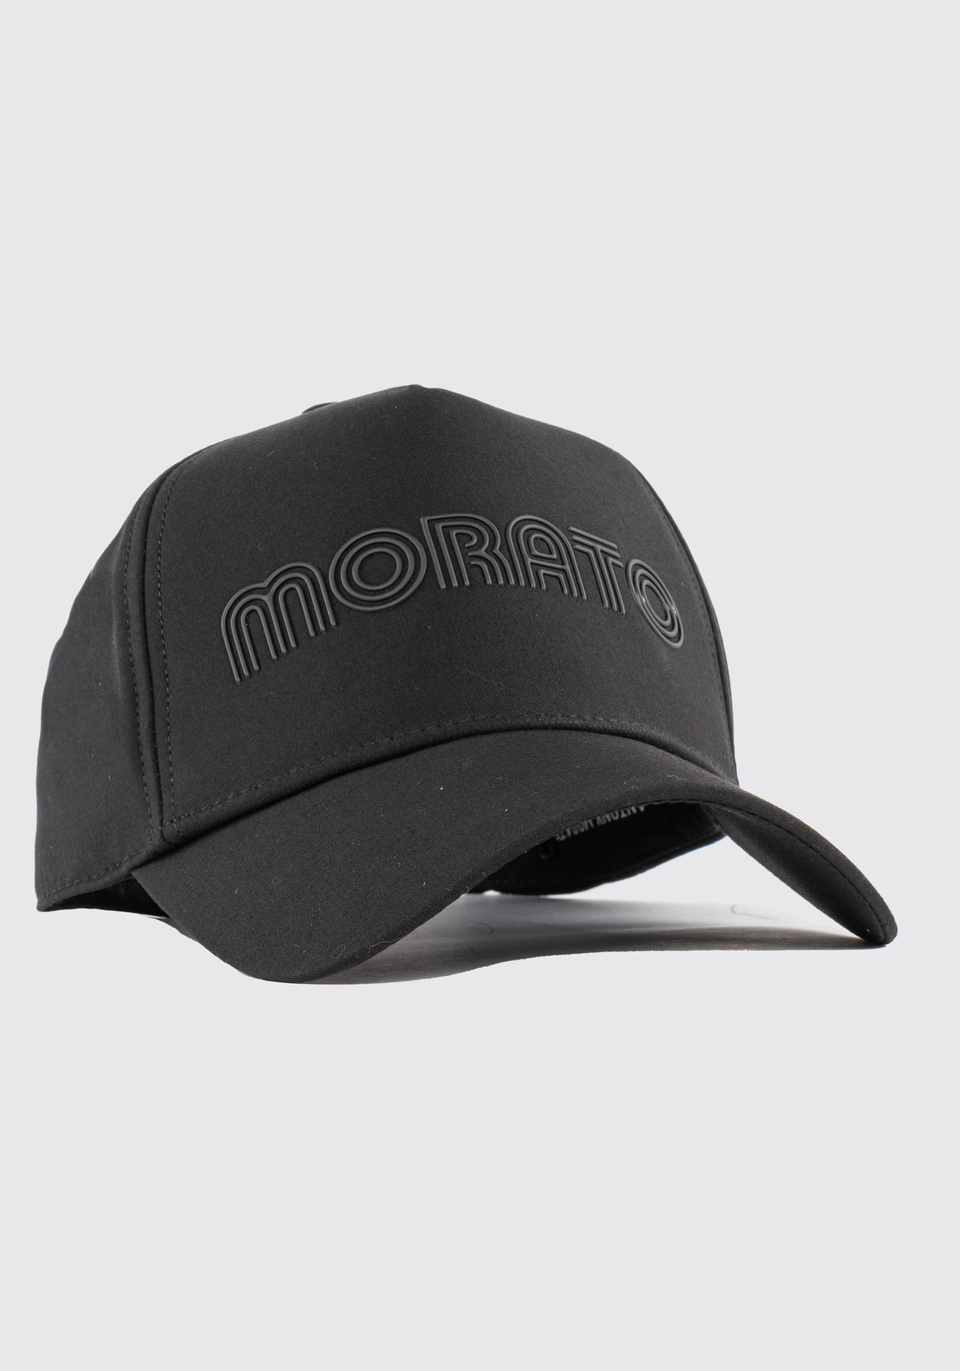 BASEBALL CAP IN POPLIN WITH LOGO - Antony Morato Online Shop